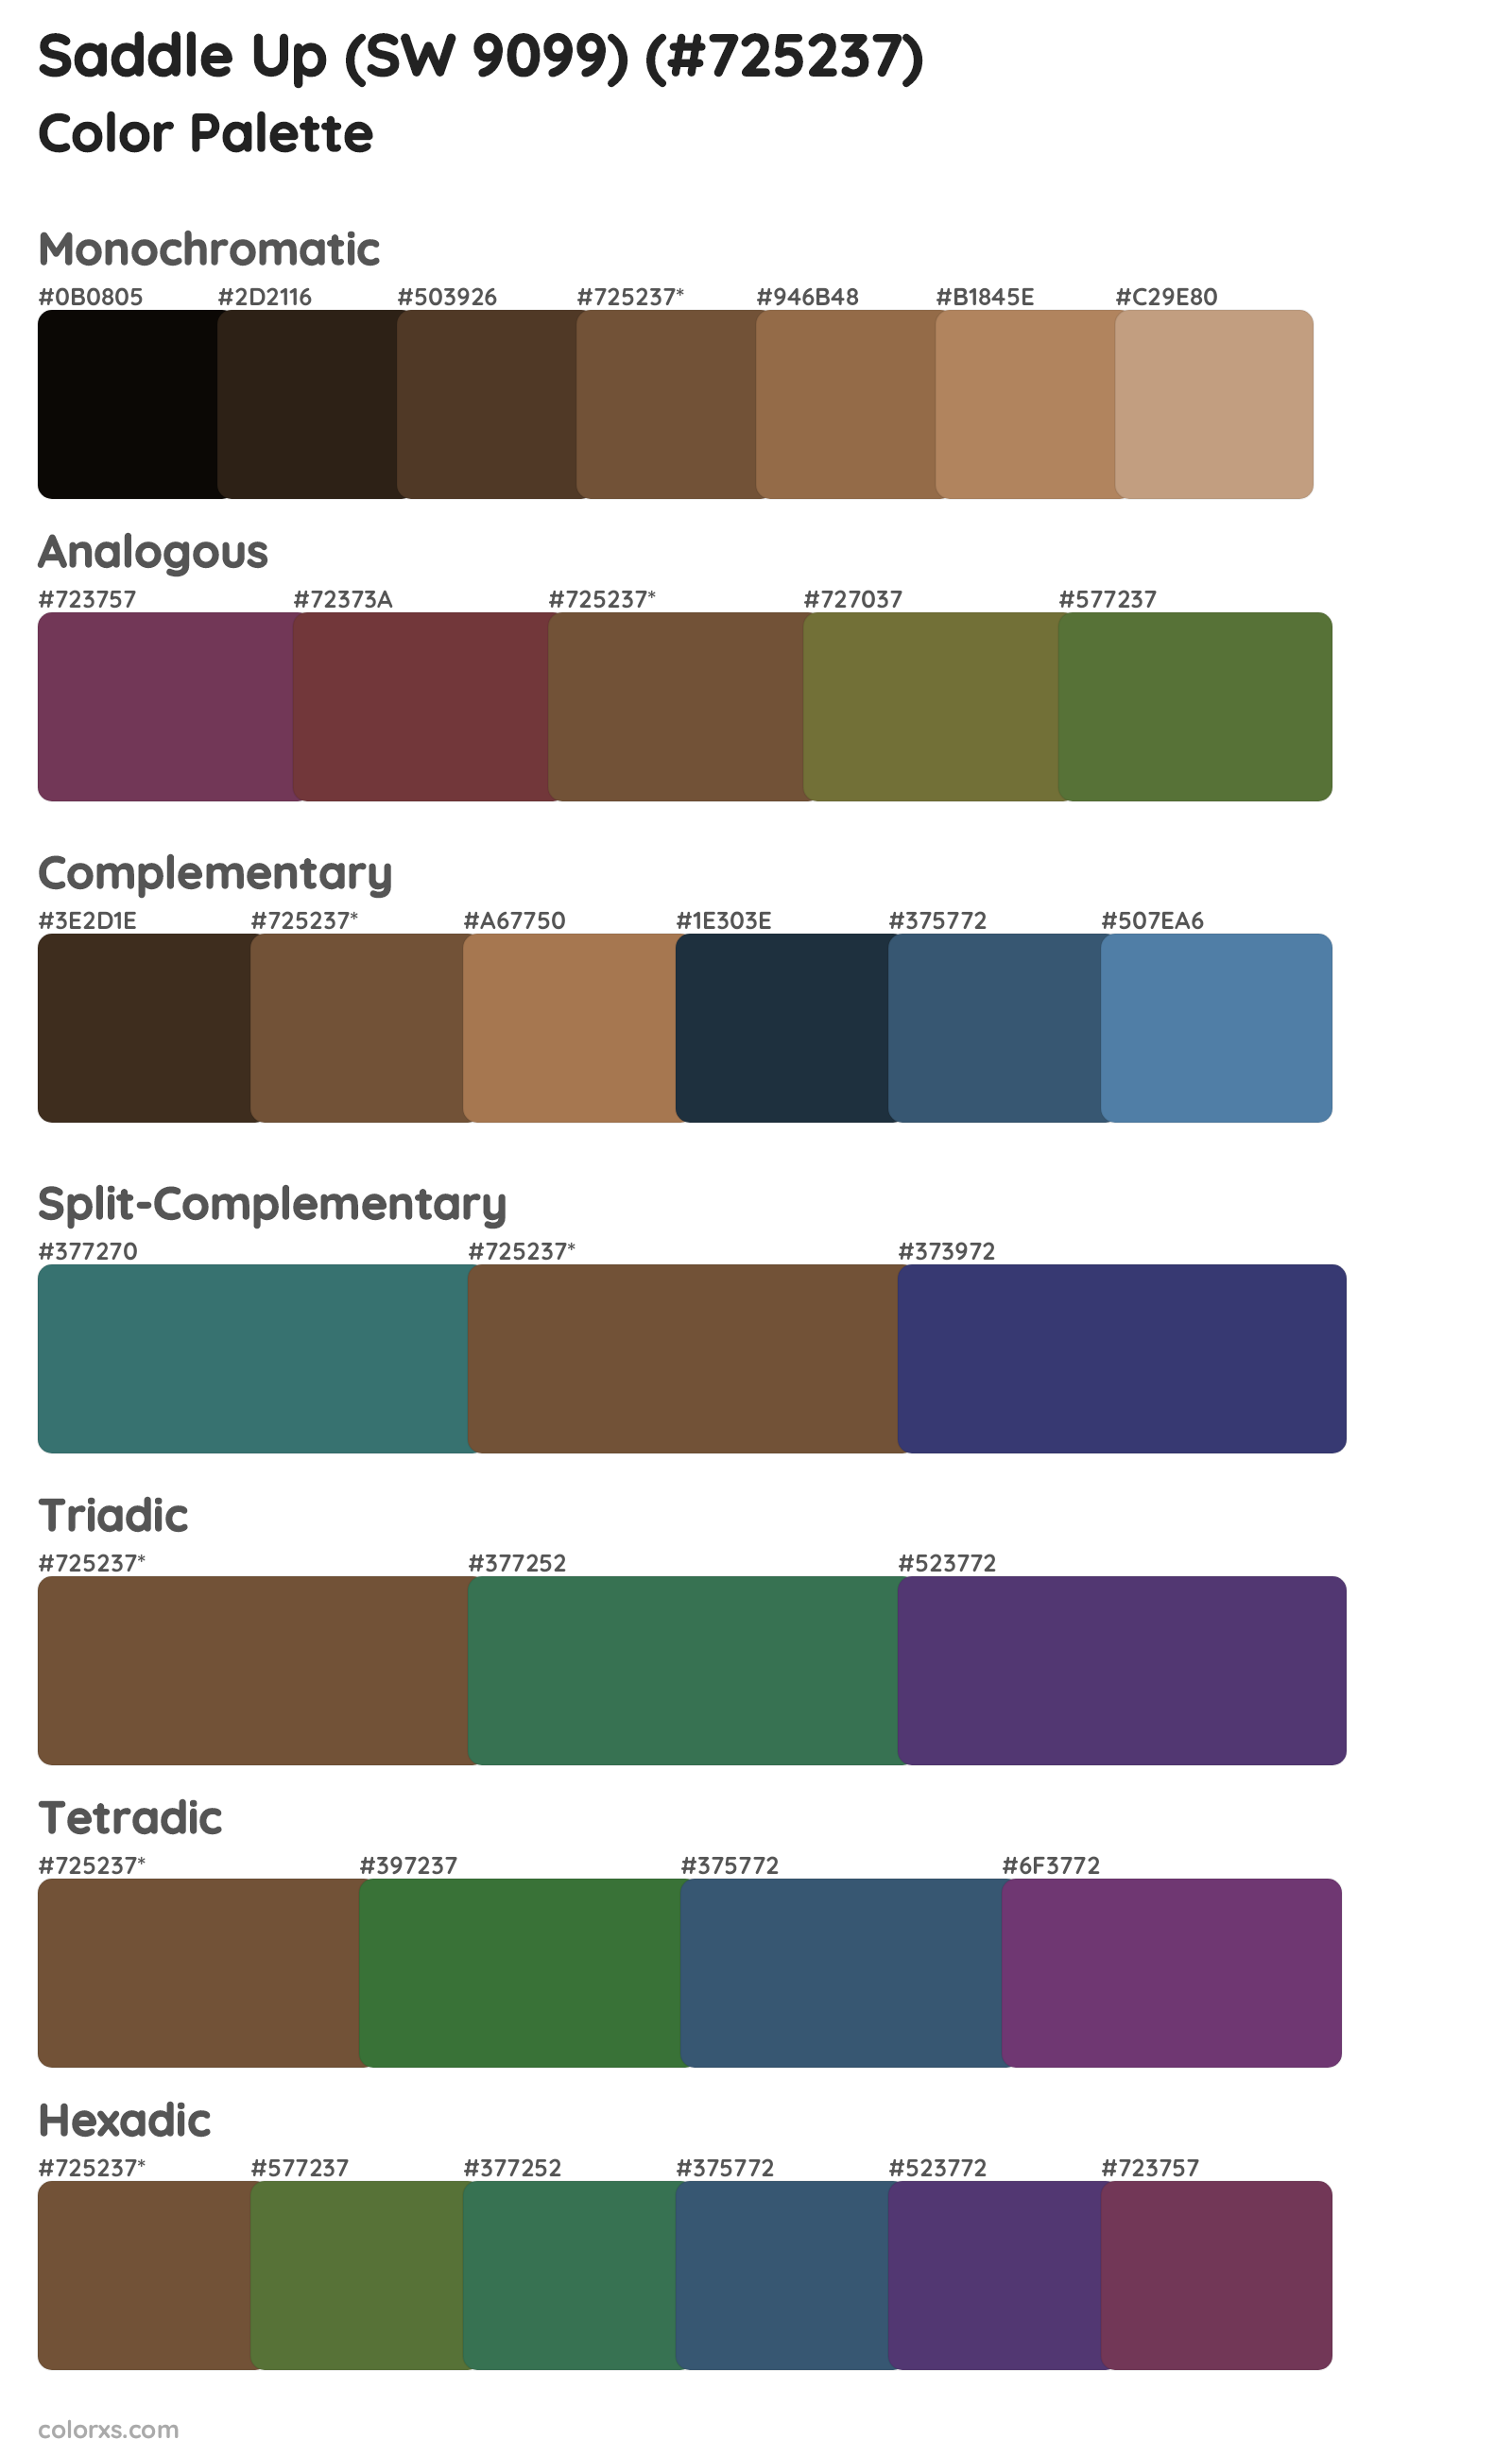 Saddle Up (SW 9099) Color Scheme Palettes